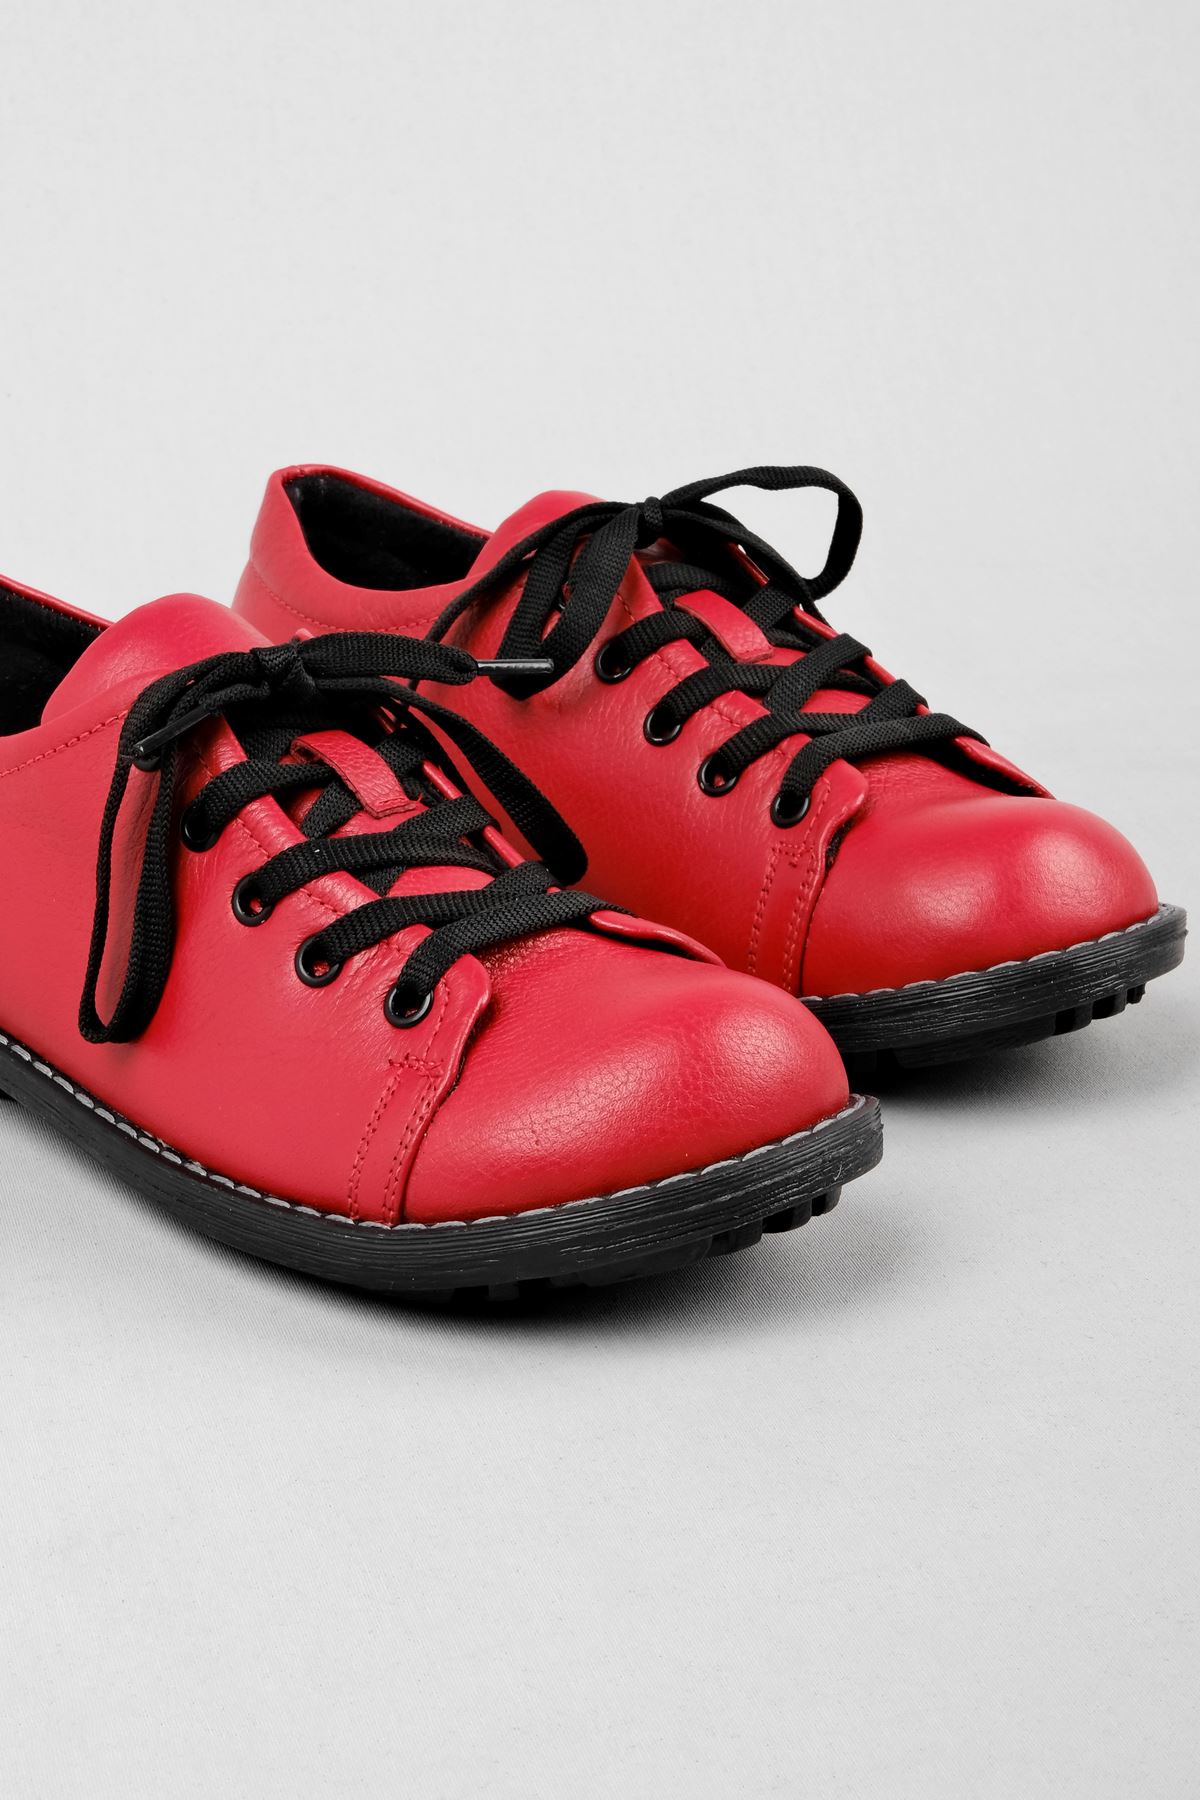 Clown Kadın Hakiki Deri Ayakkabı-Kırmızı